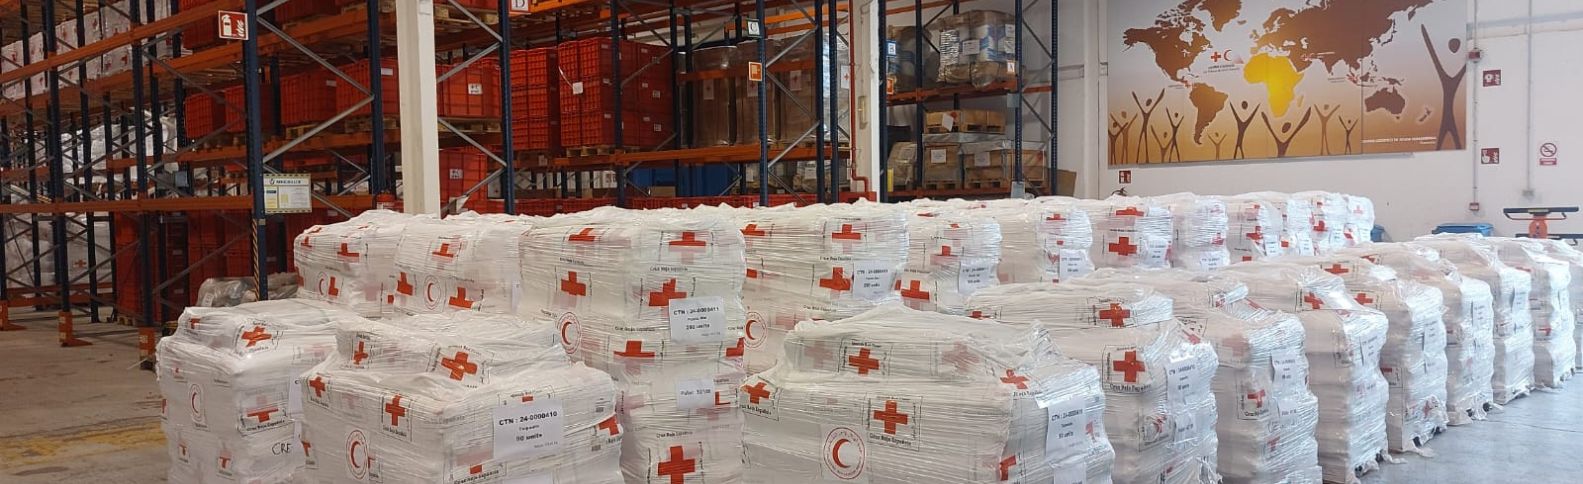 Cruz Roja Española envía 53 toneladas de ayuda humanitaria a Gaza